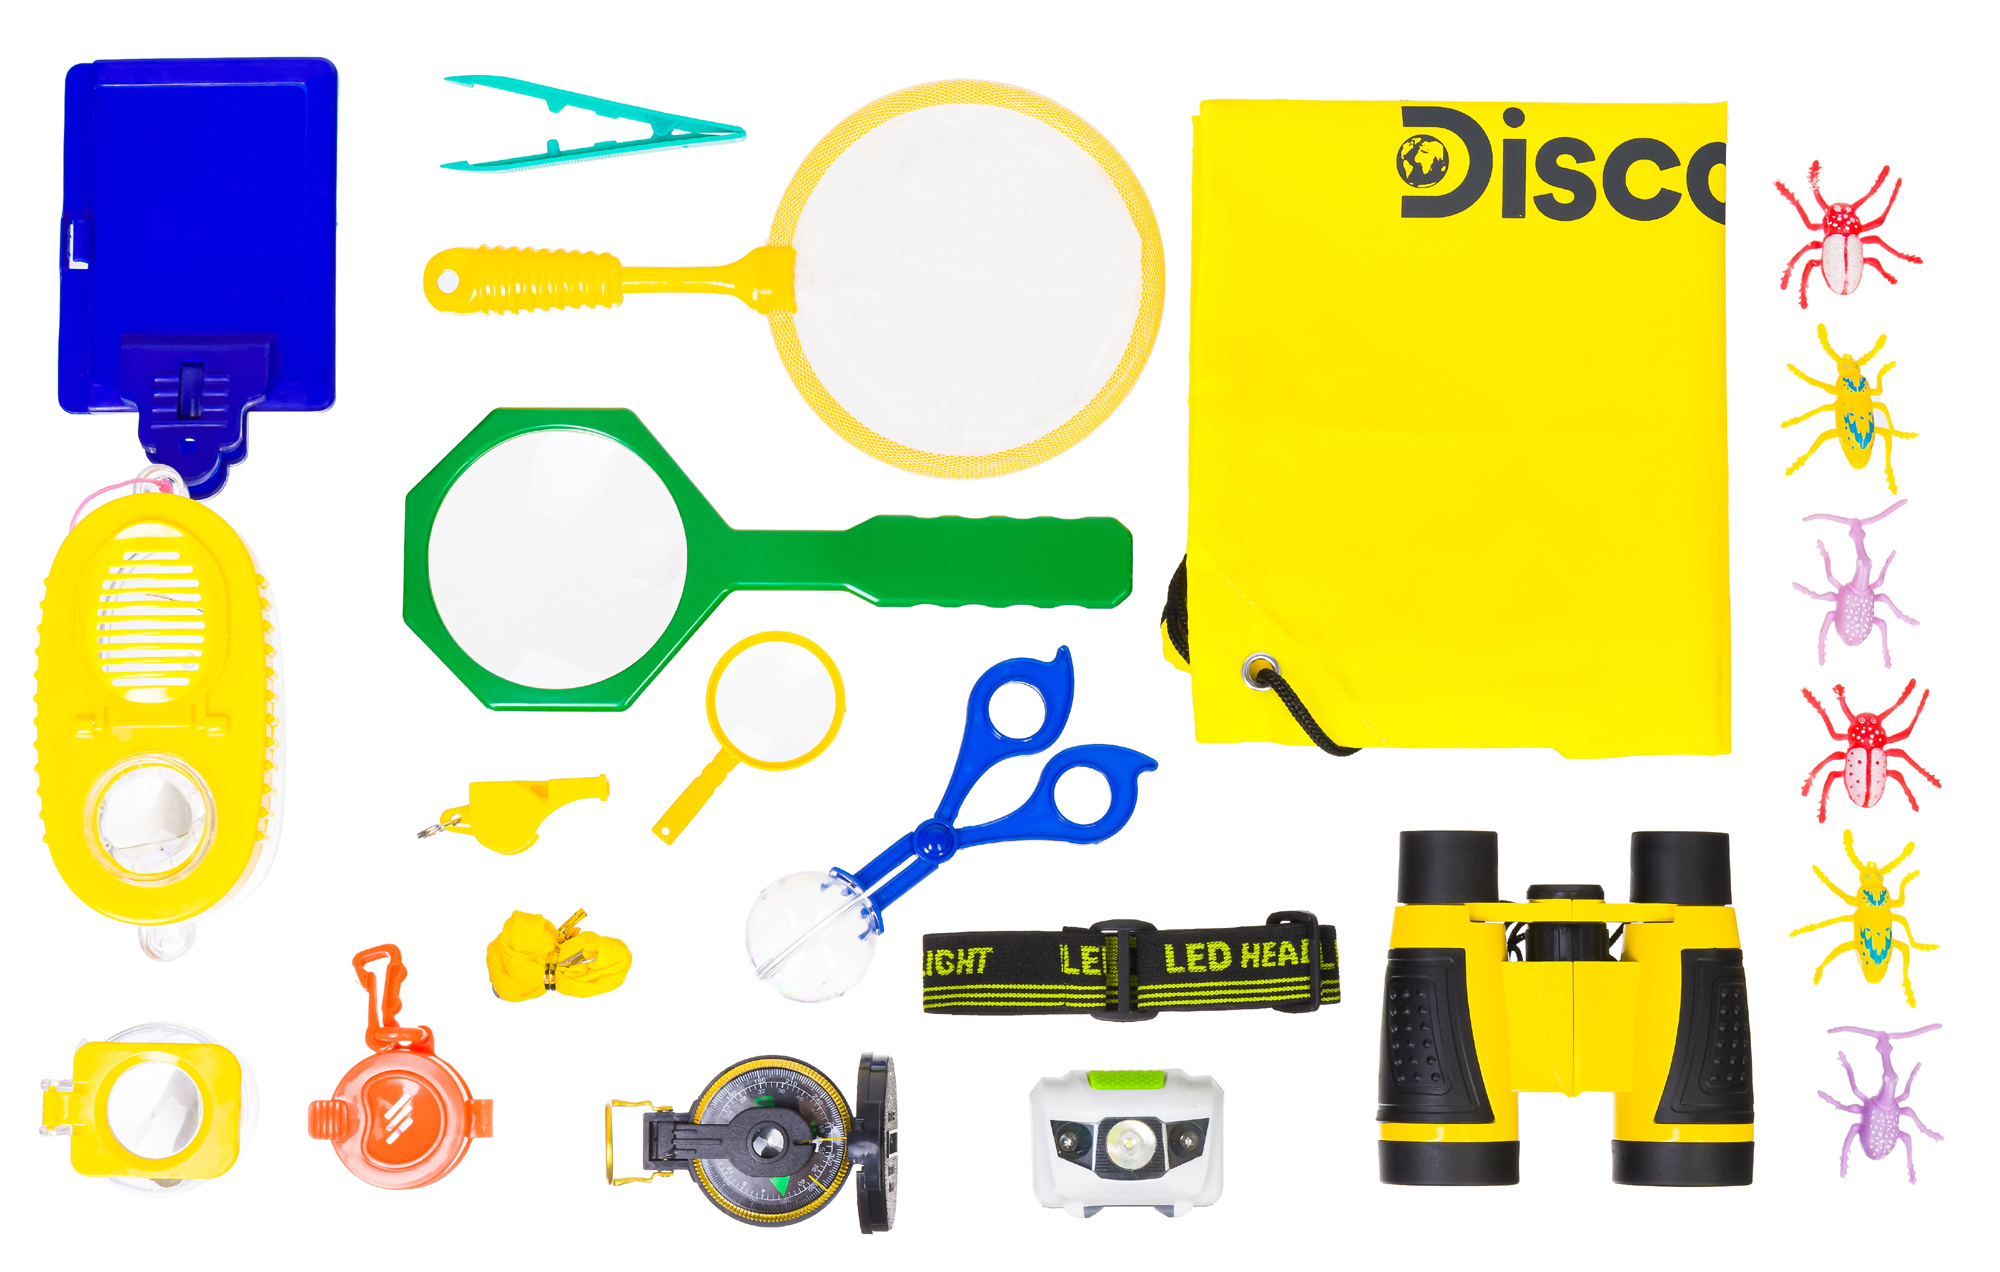 Detská prírodovedná sada Discovery Basics EK70 Explorer Kit je určená pre všetkých malých zvedavcov, ktorí sa chcú stať uznávaným biológom